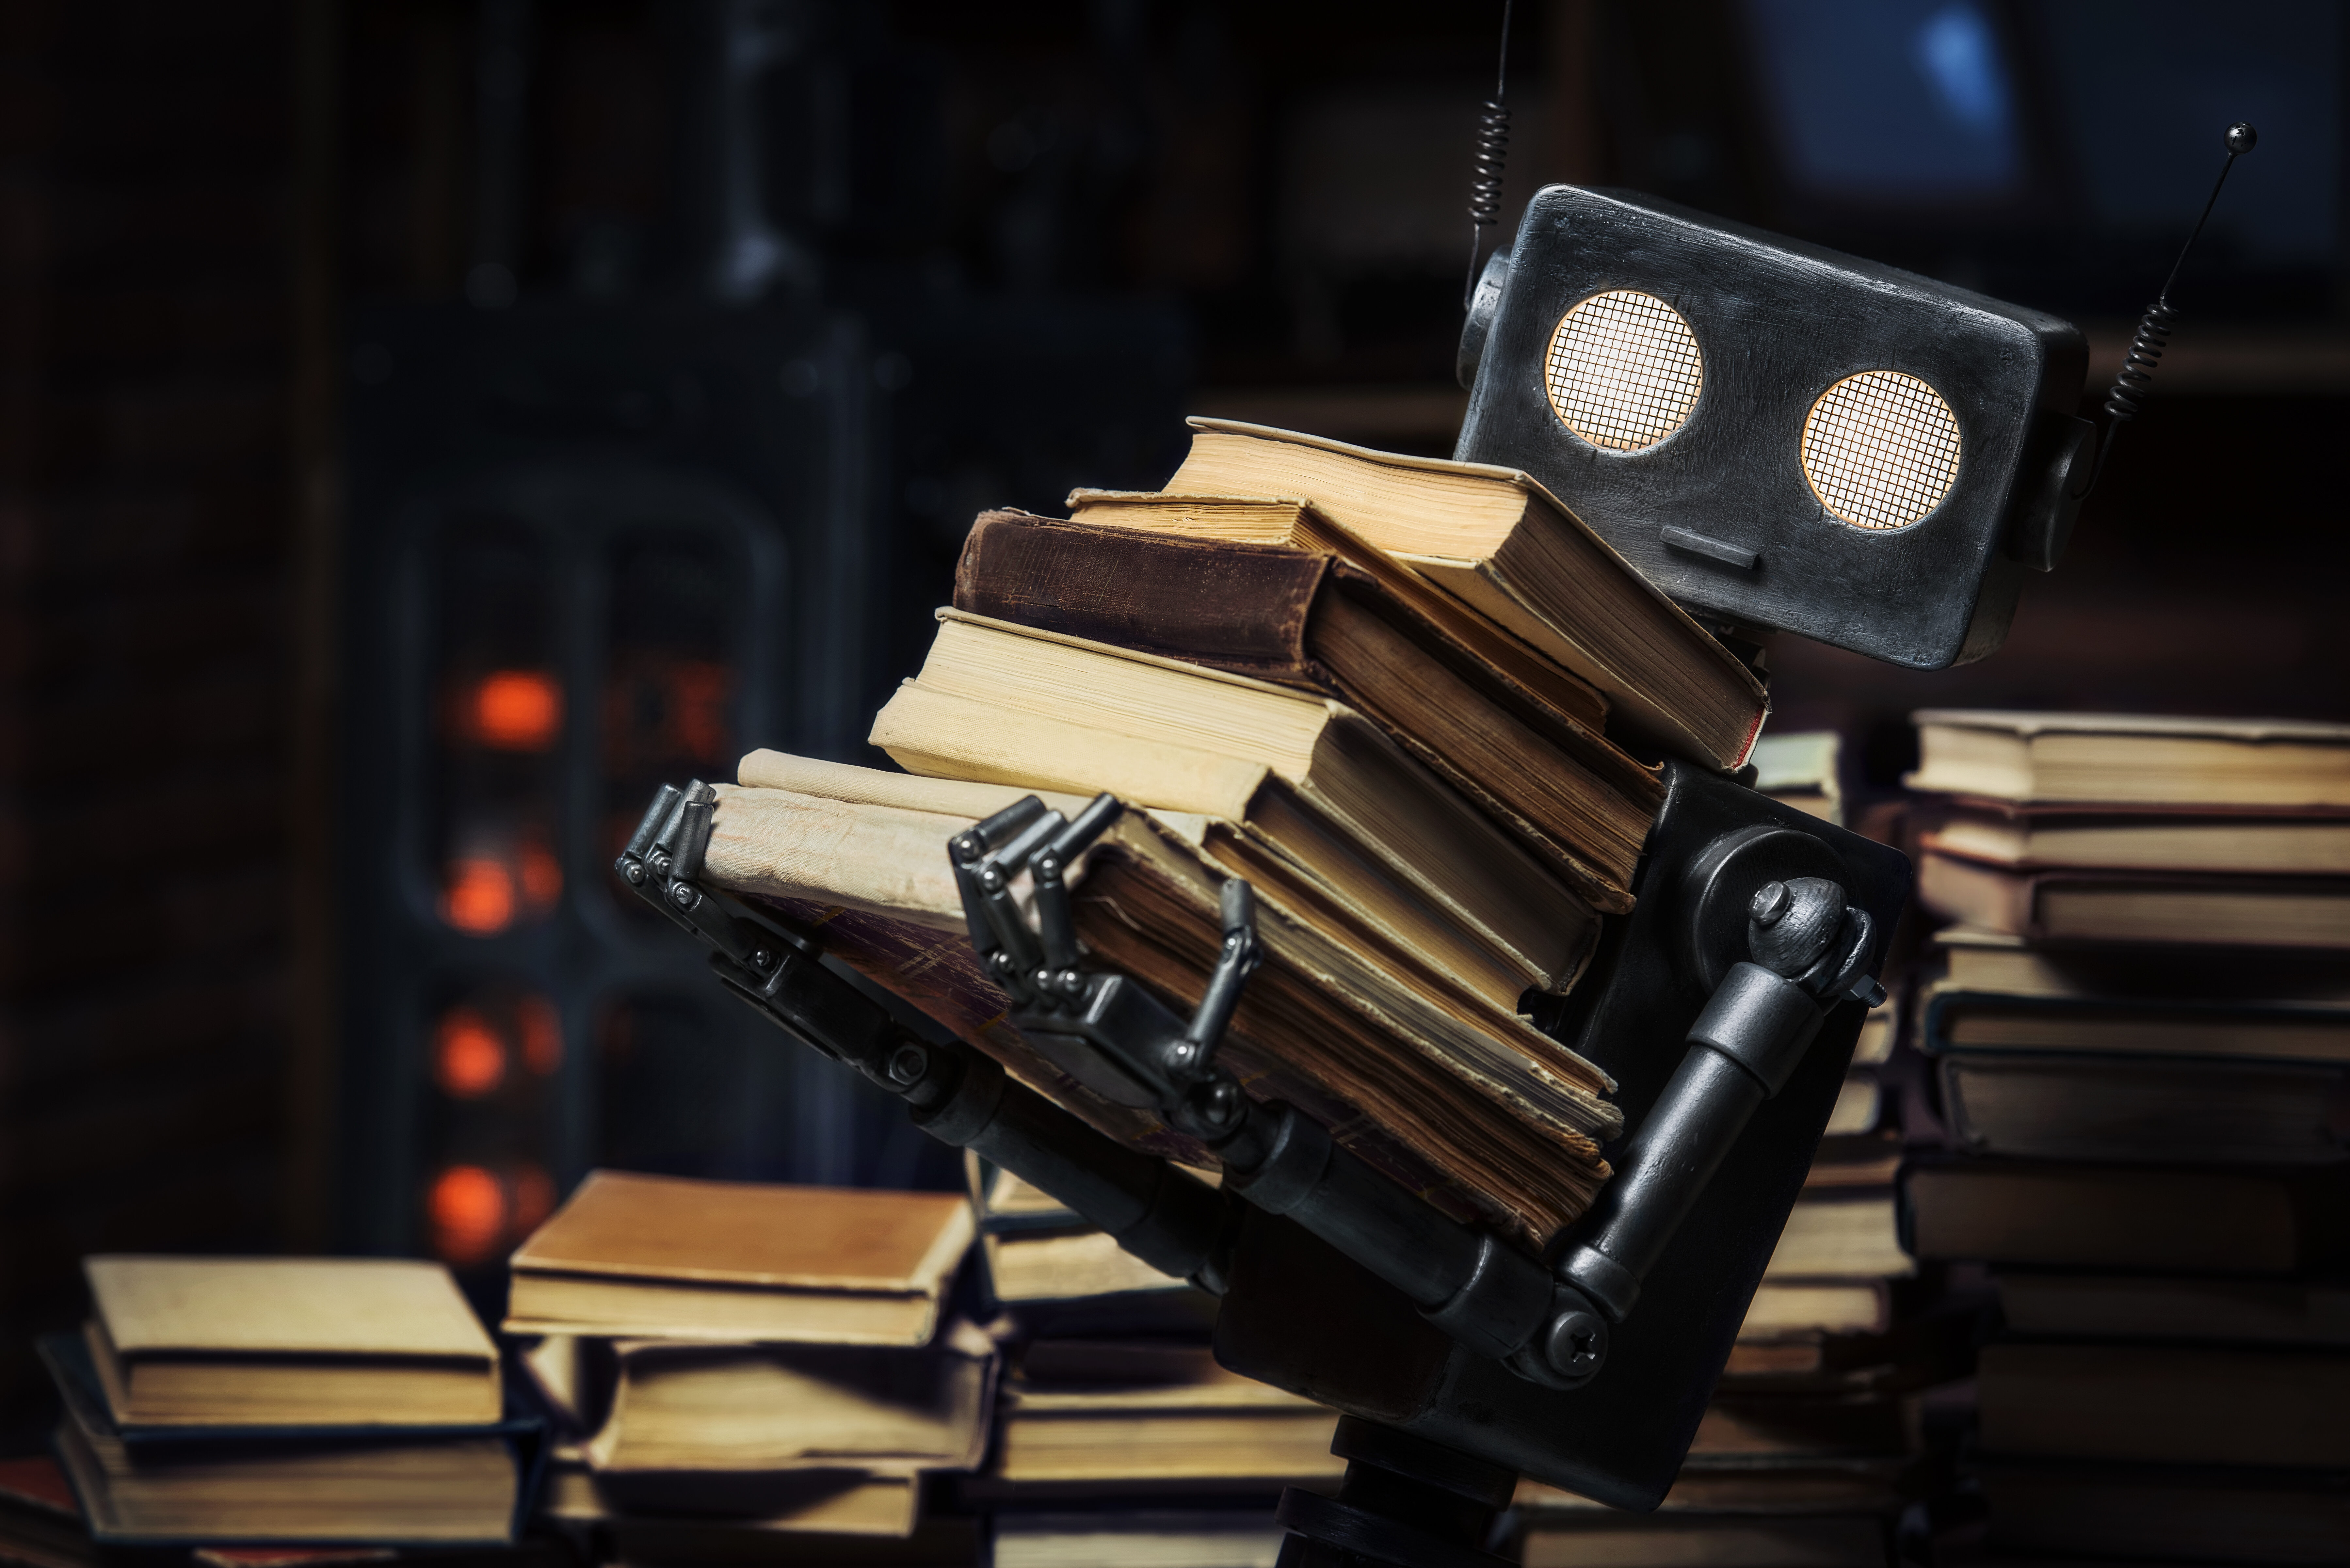 Meta avoue avoir entraîné son IA avec des livres... piratés !